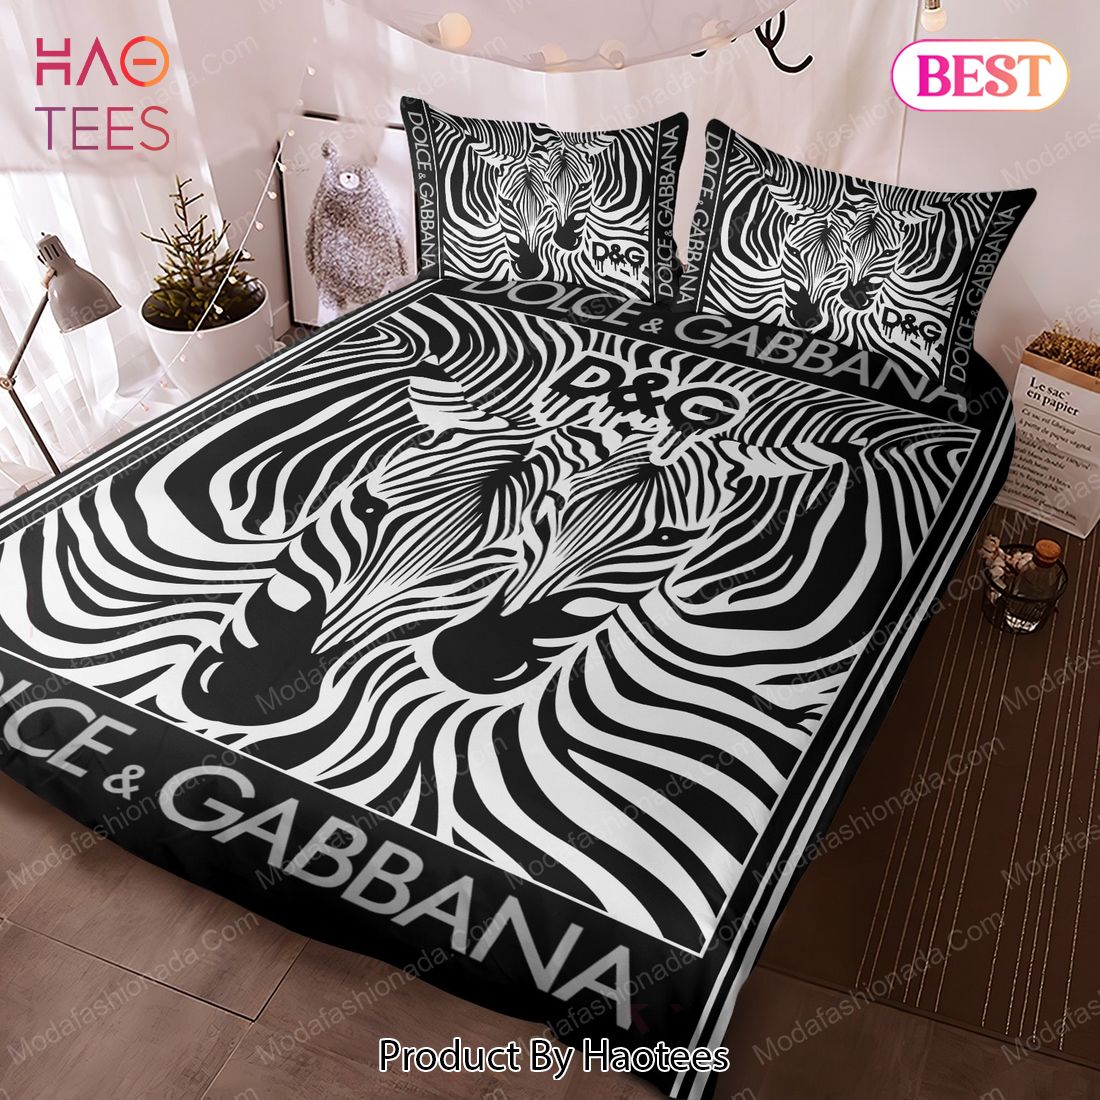 Buy Horse Dolce & Gabbana Bedding Sets Bed Sets, Bedroom Sets, Comforter  Sets, Duvet Cover, Bedspread